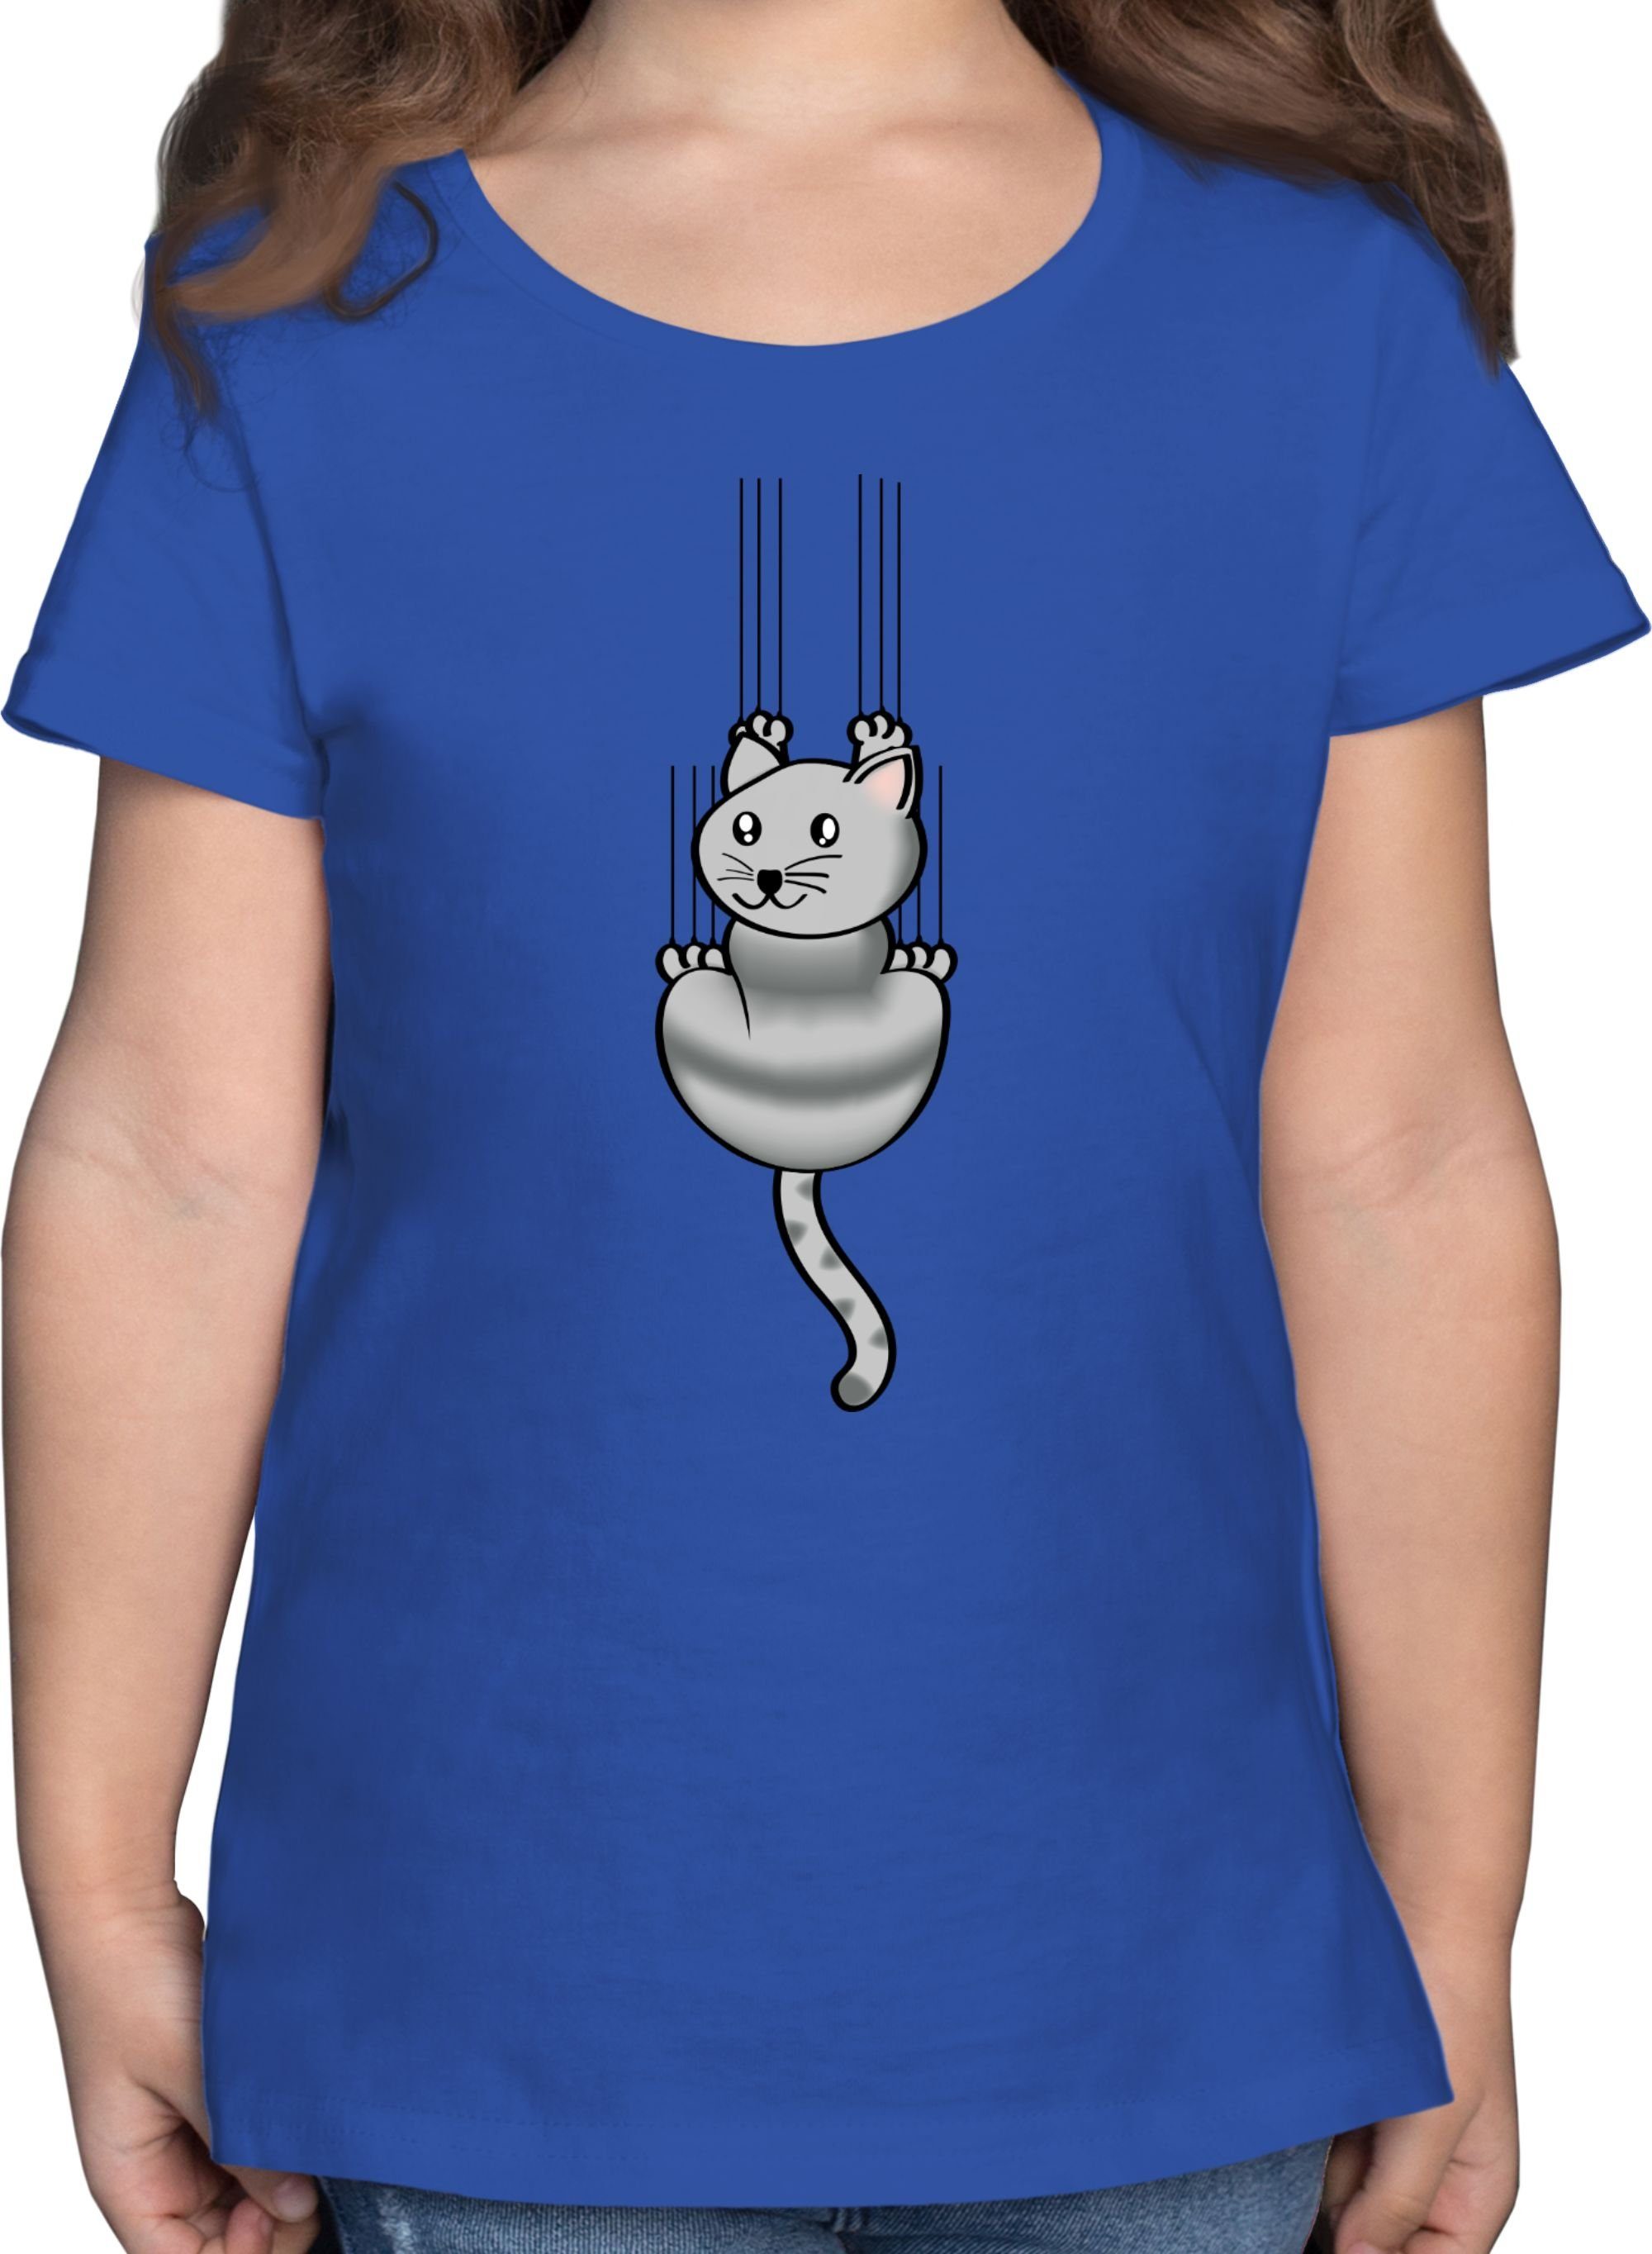 Shirtracer T-Shirt Kratze Katze - Tiermotiv Animal Print - Mädchen Kinder T-Shirt  katze tshirt - shirt mit katzenmotiv mädchen 8 jahre - cat gifts